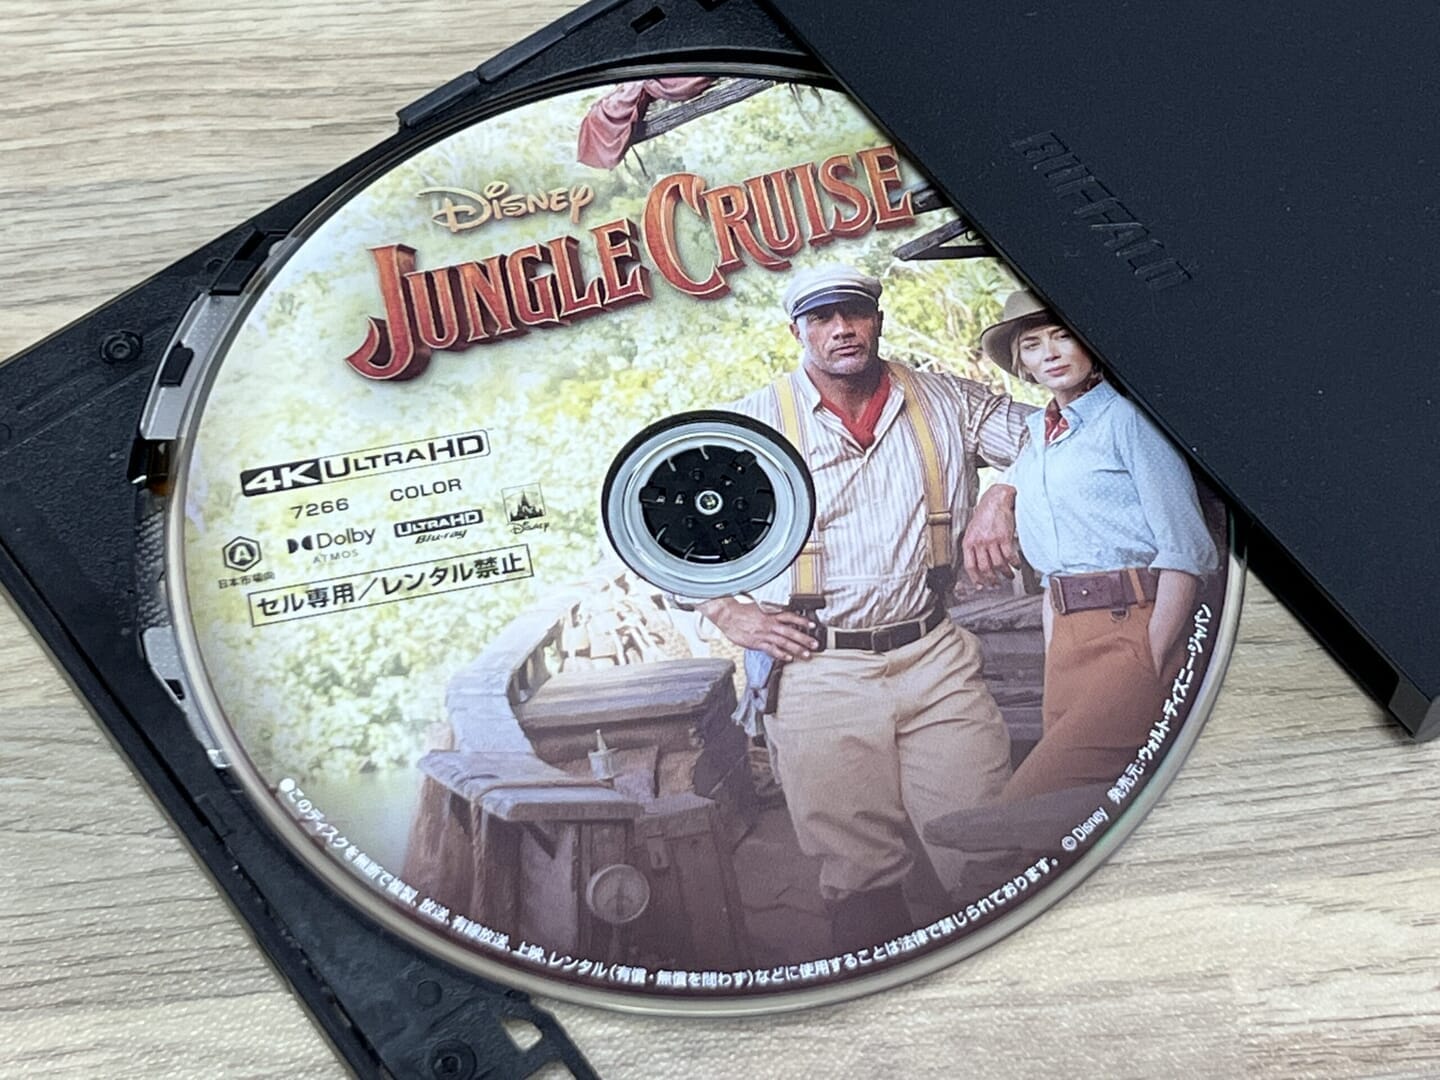 4K UHD Blu-rayコピー性能を検証：ディズニー作品『ジャングル・クルーズ』をISO形式で丸ごとコピーできました。